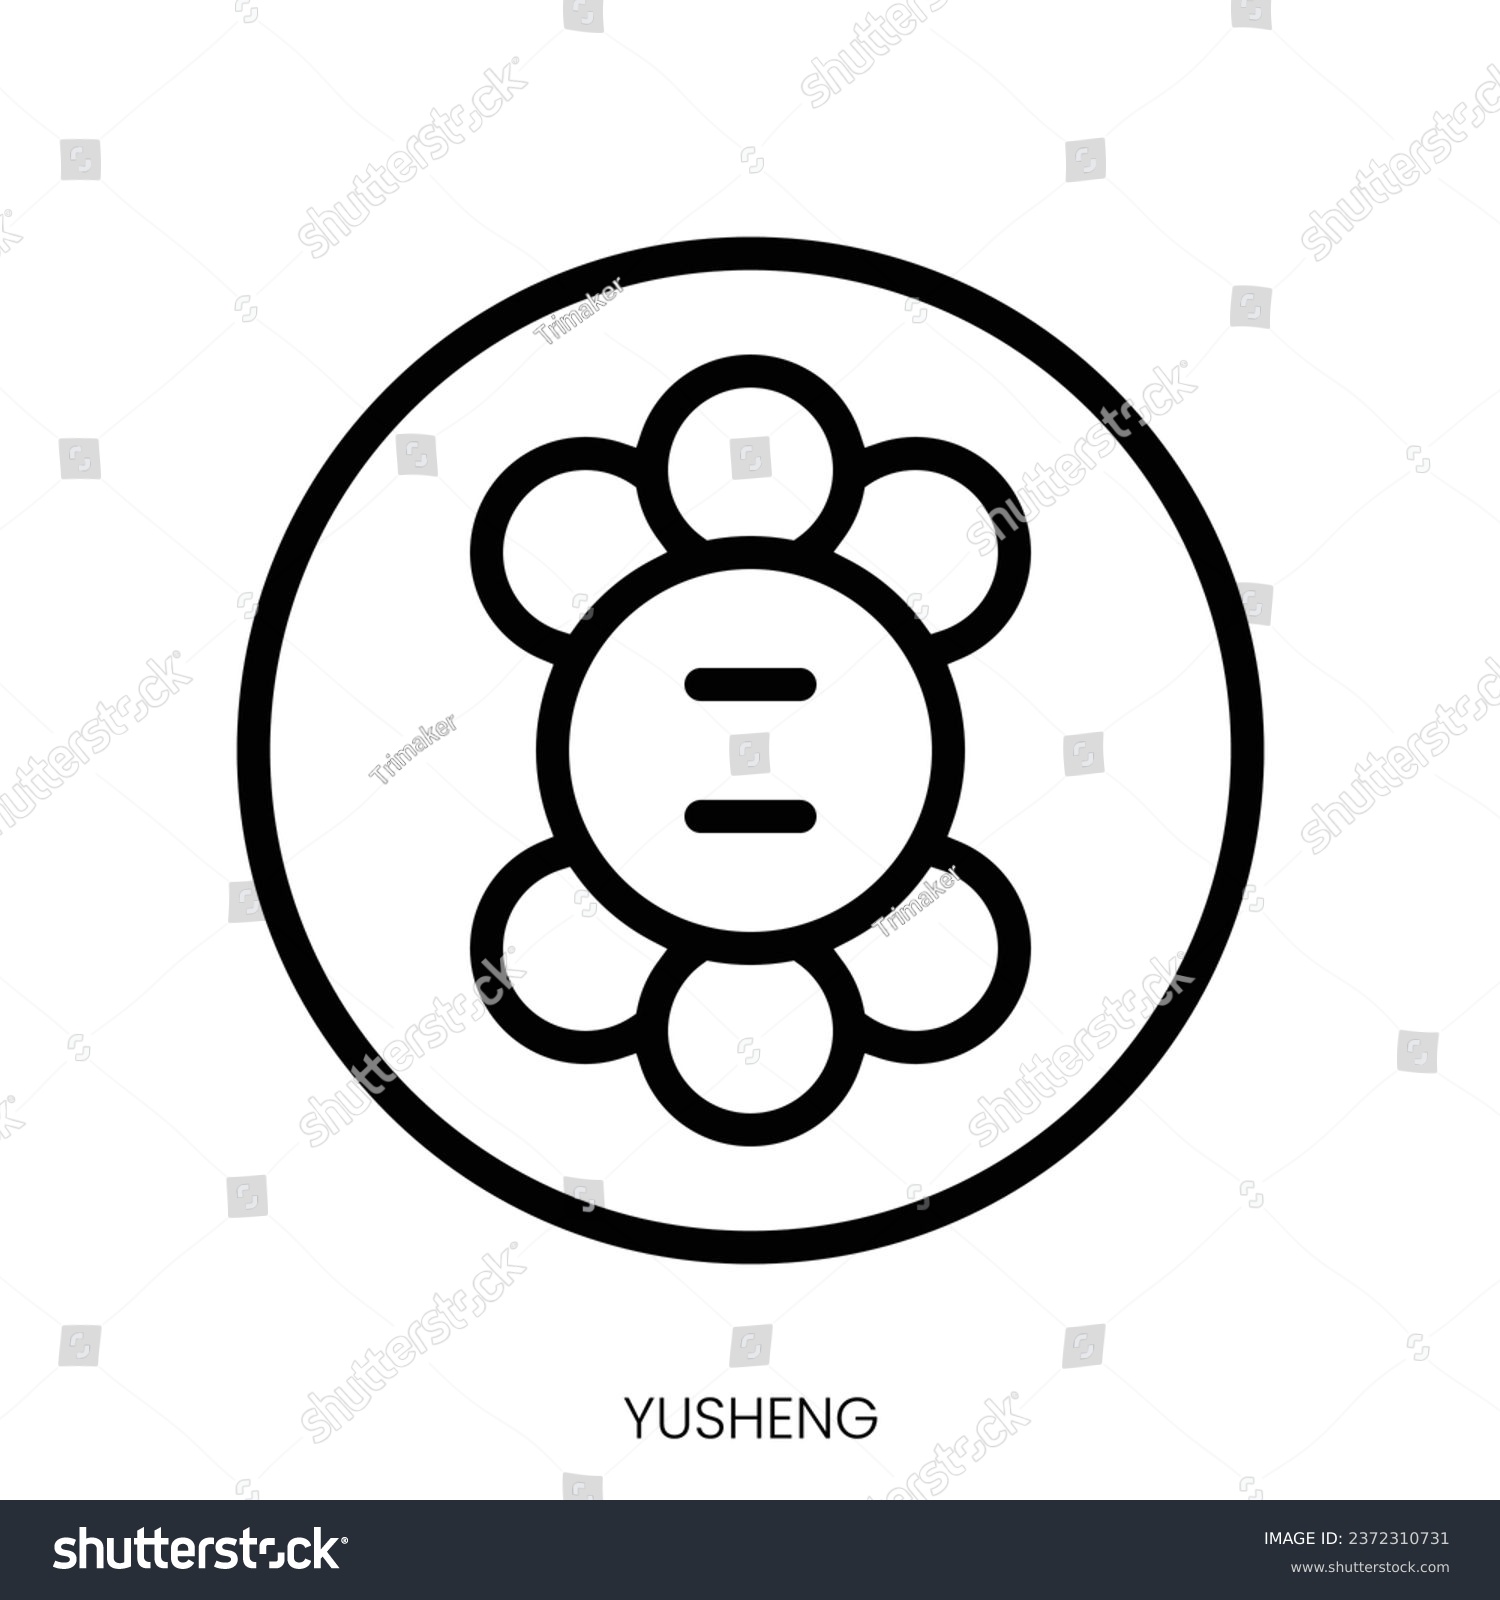 SVG of yusheng icon. Line Art Style Design Isolated On White Background svg